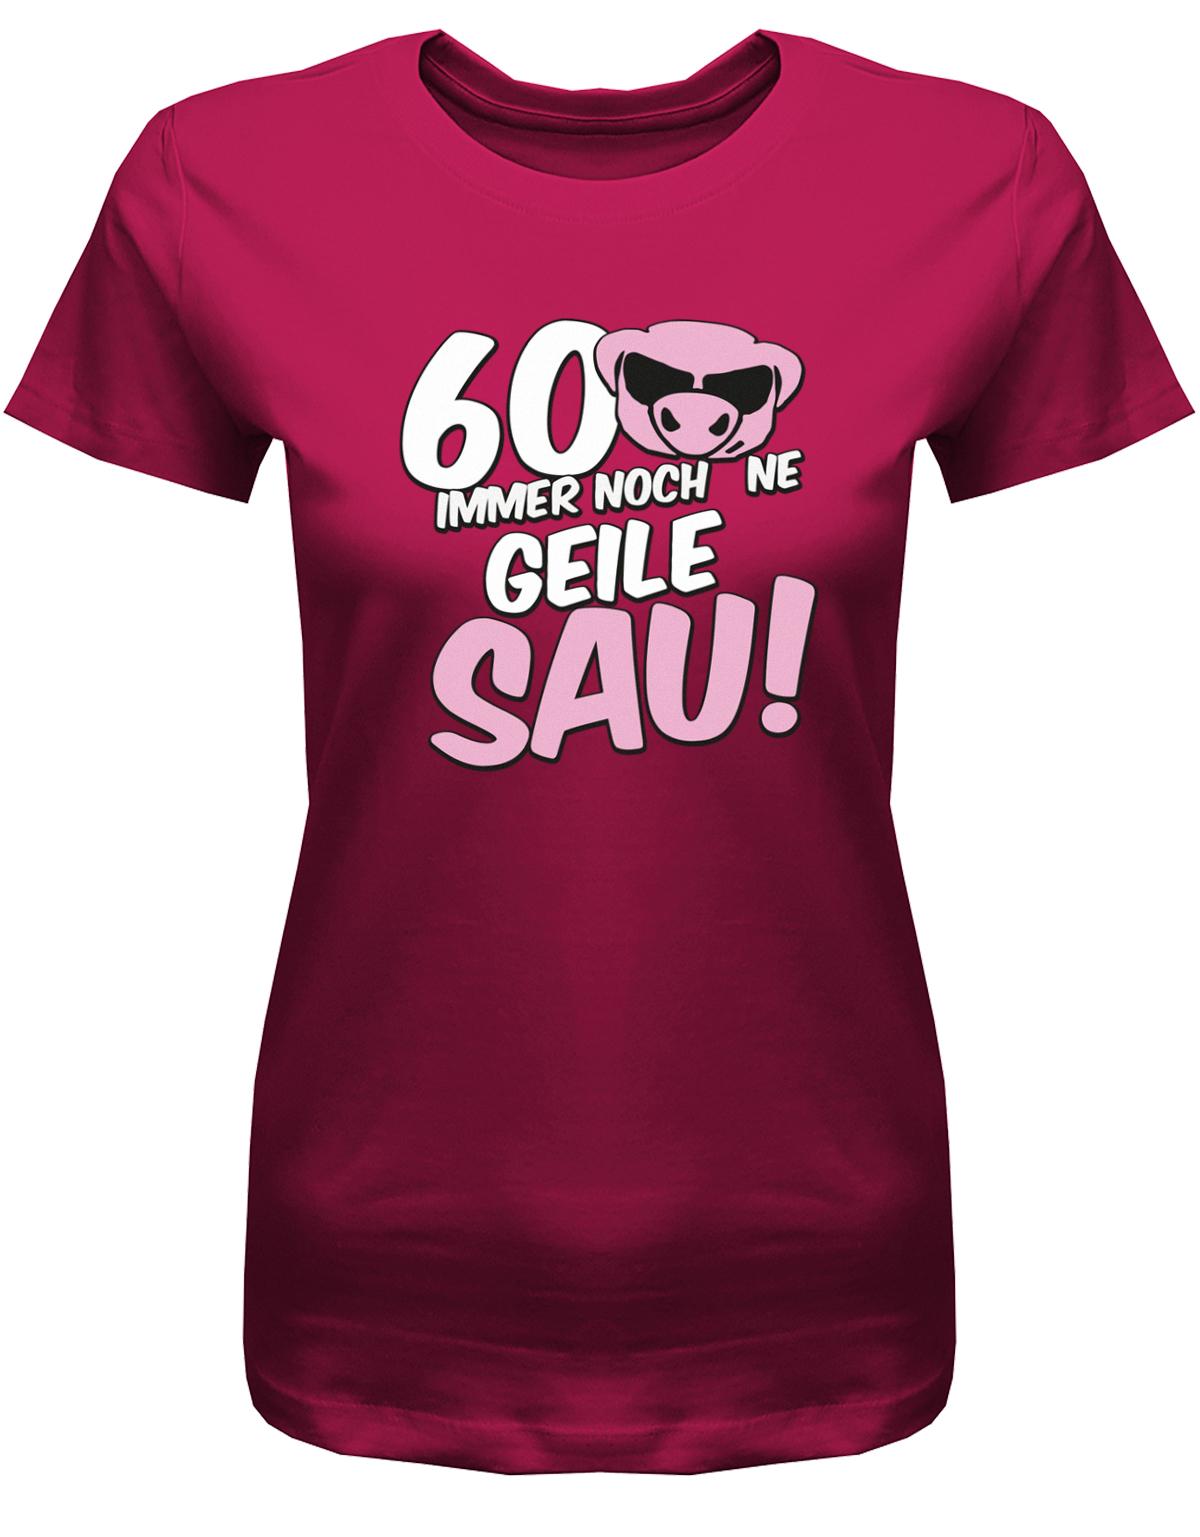 Lustiges T-Shirt zum 60 Geburtstag für die Frau Bedruckt mit 60 Immer noch 'ne geile Sau! Sau mit Sonnenbrille Sorbet